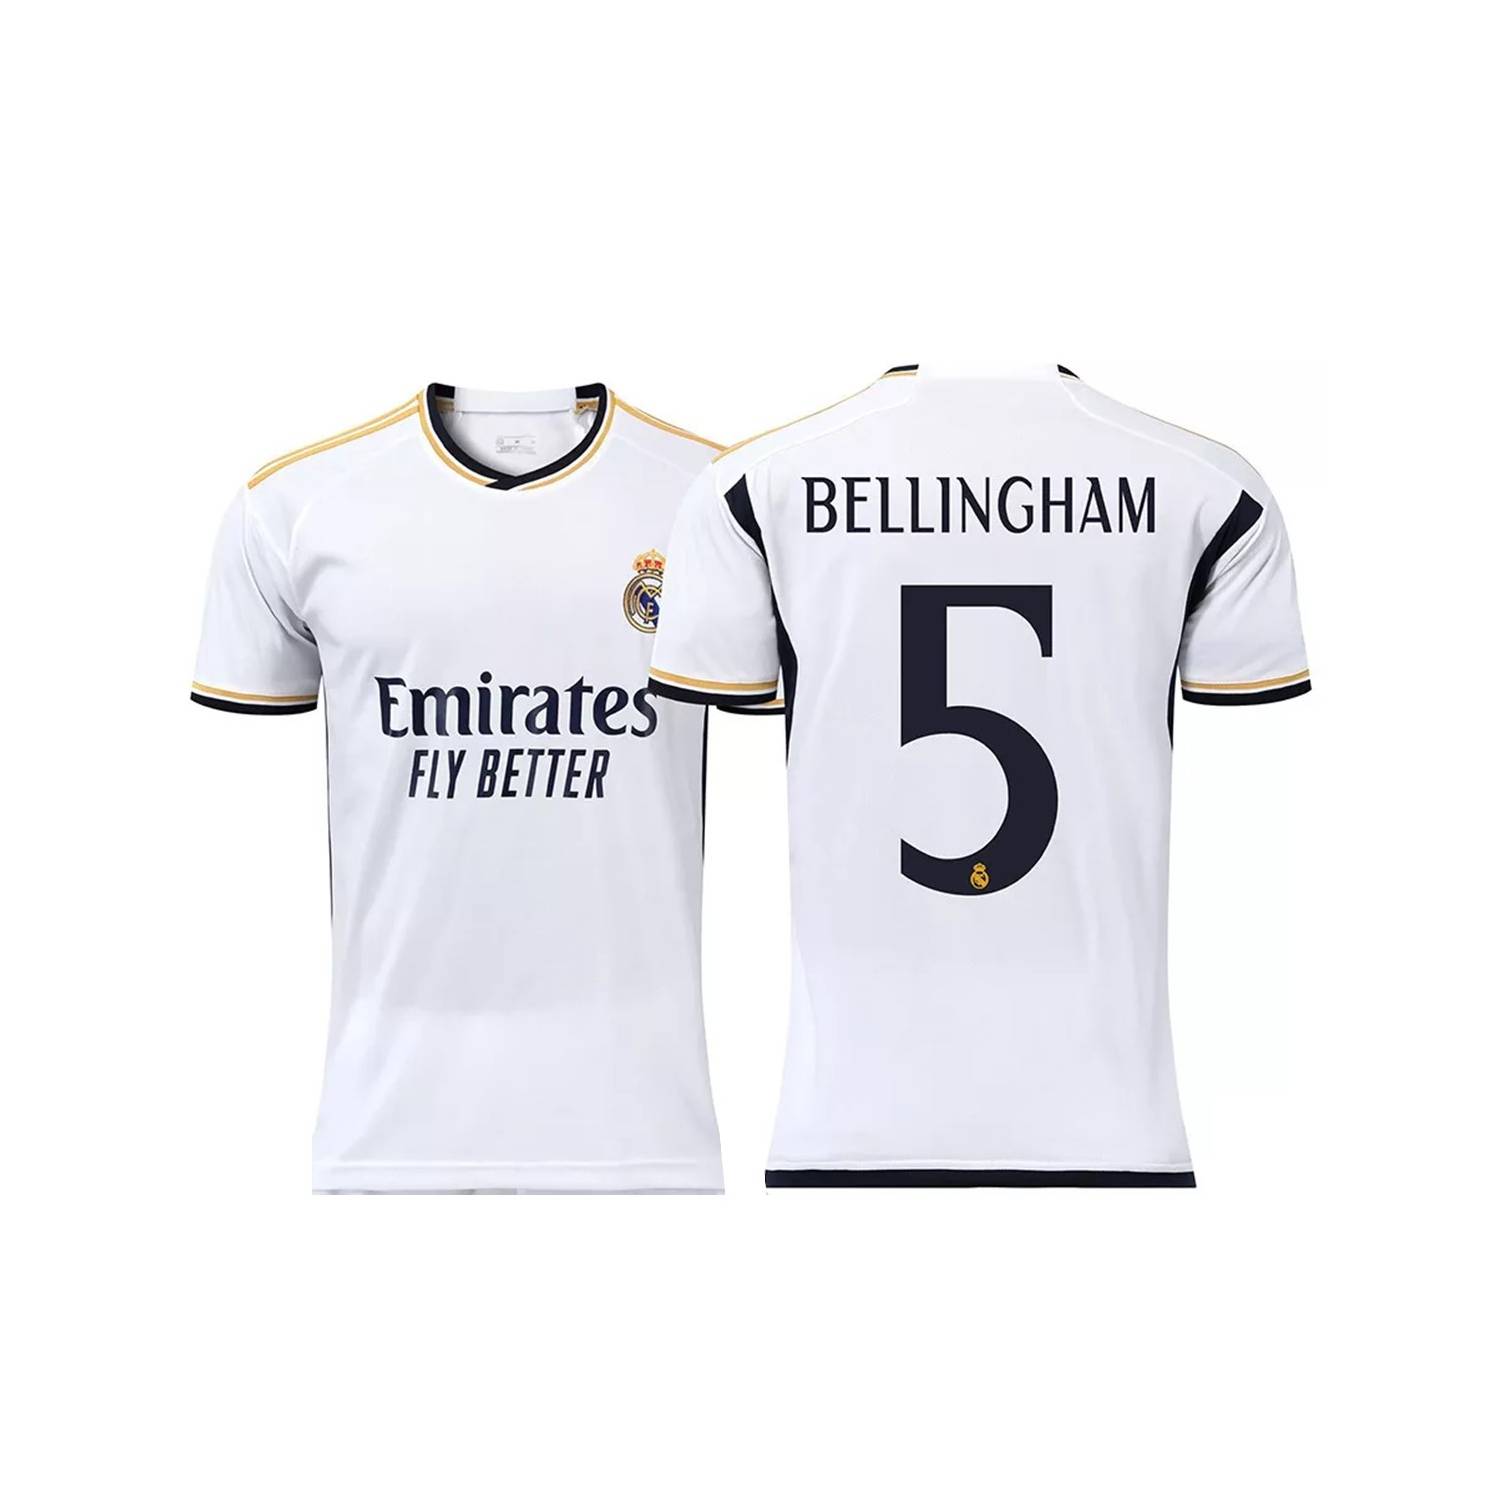 Milanuncios - Camiseta Bellingham Madrid